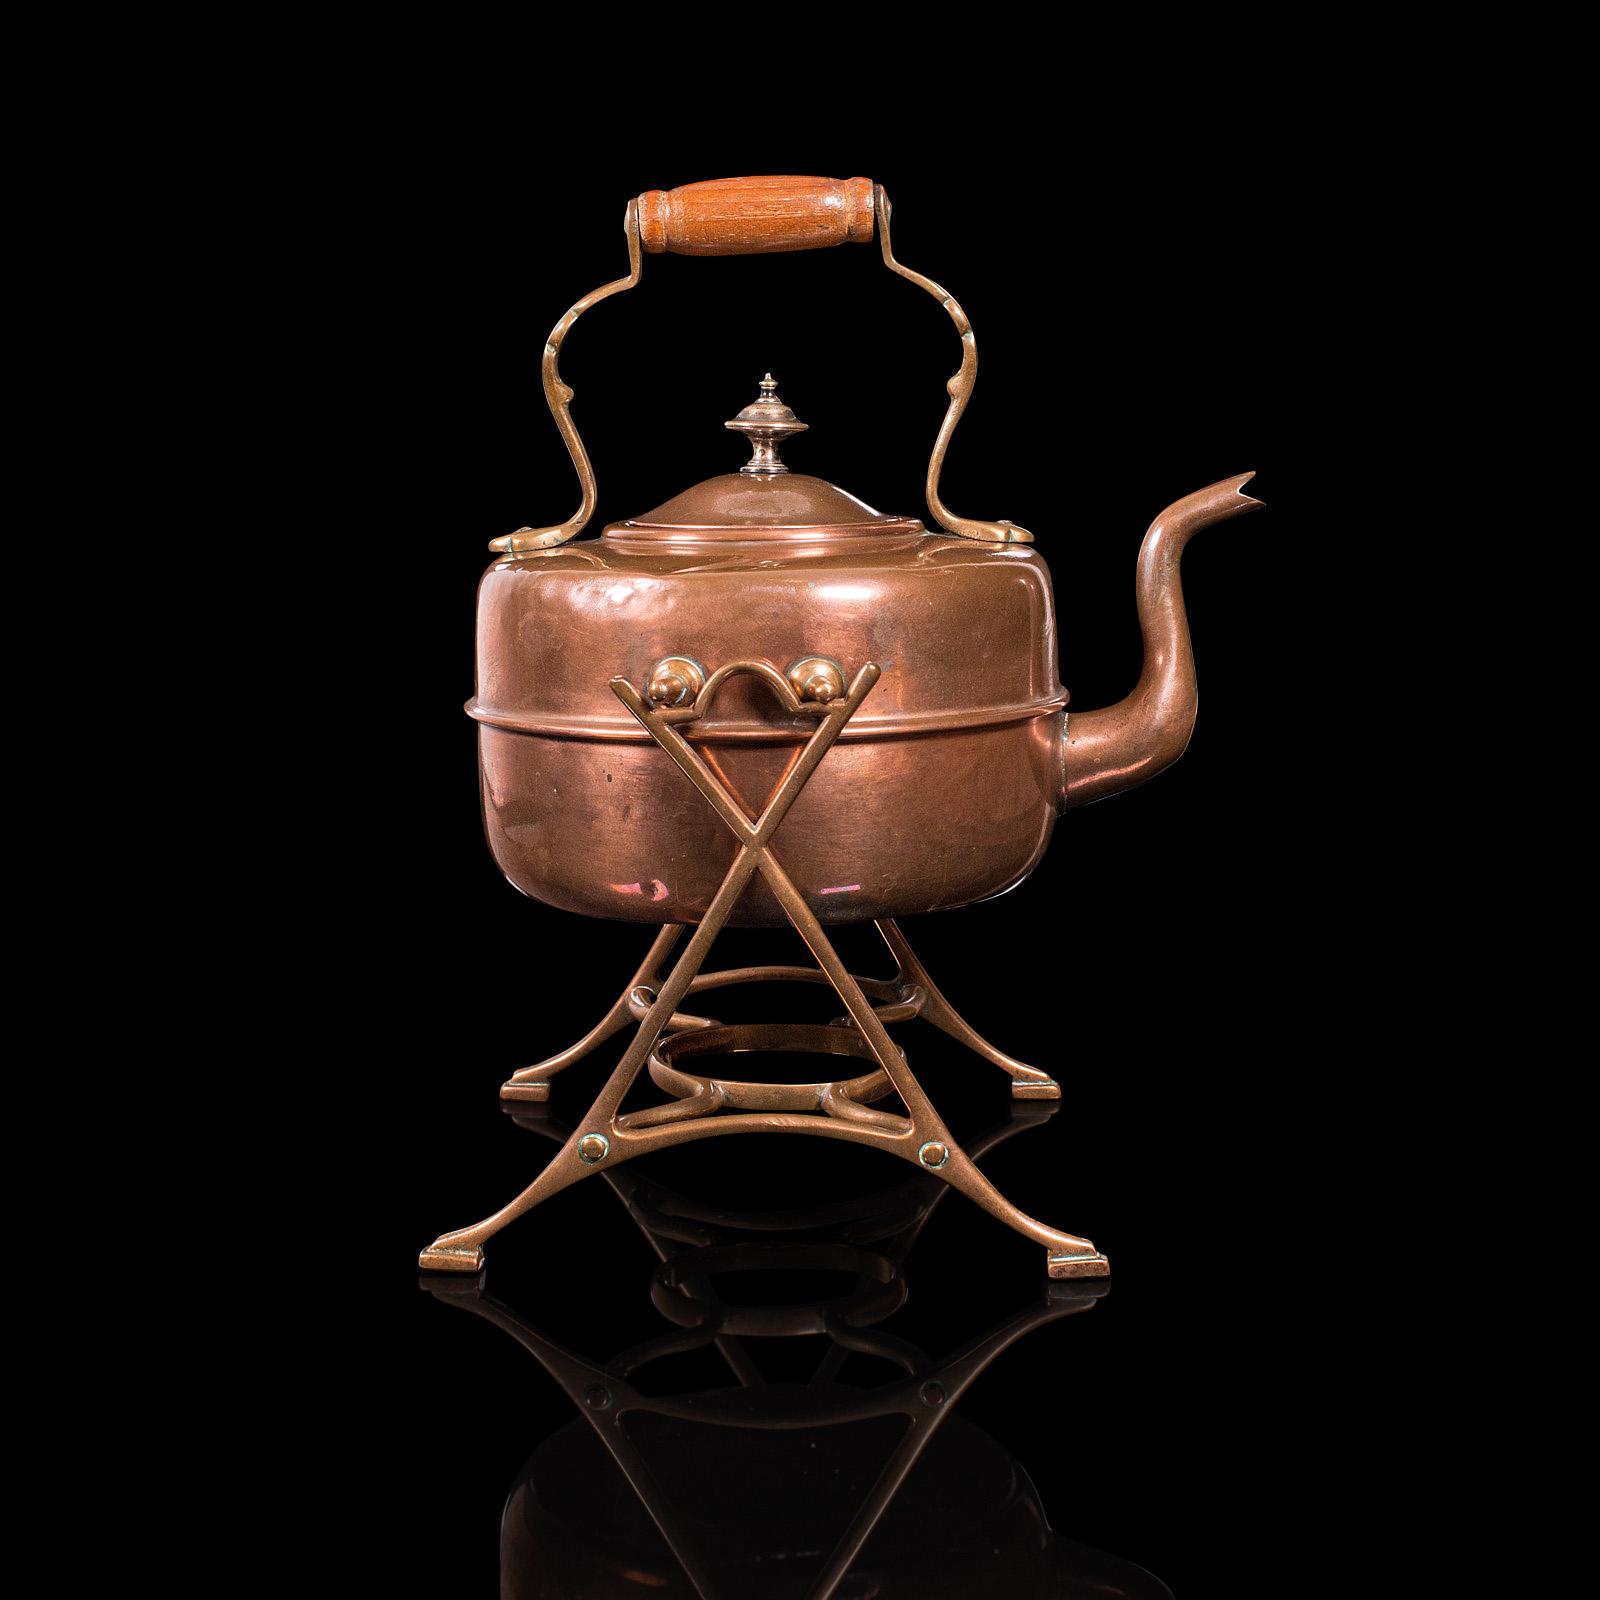 British Antique Spirit Kettle, English, Copper, Brass, Teakettle, Stand, Victorian, 1900